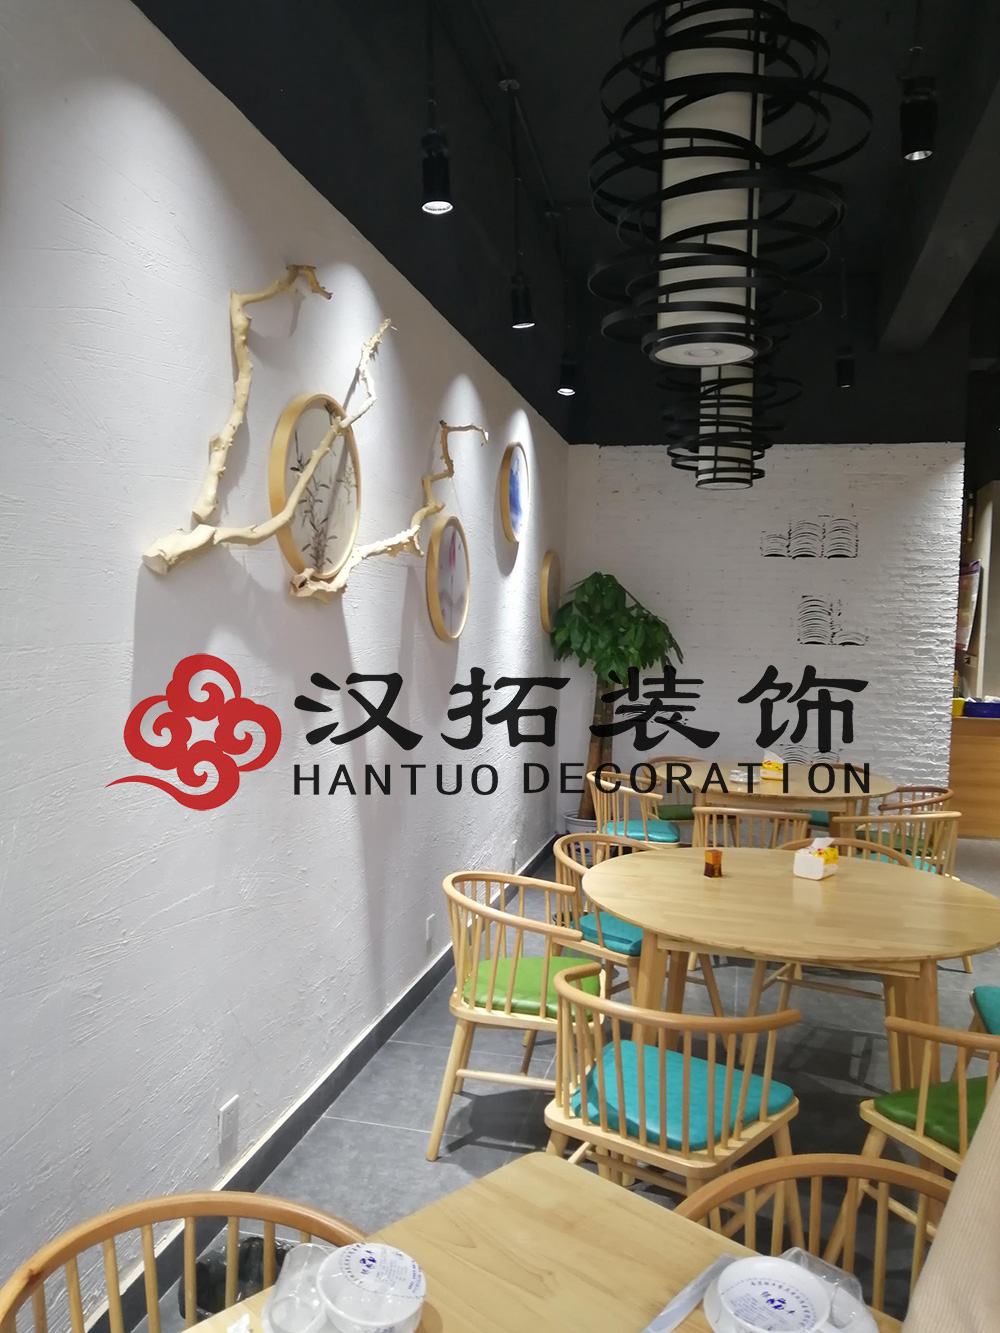 中式餐馆装修现场图 小南京大碗菜